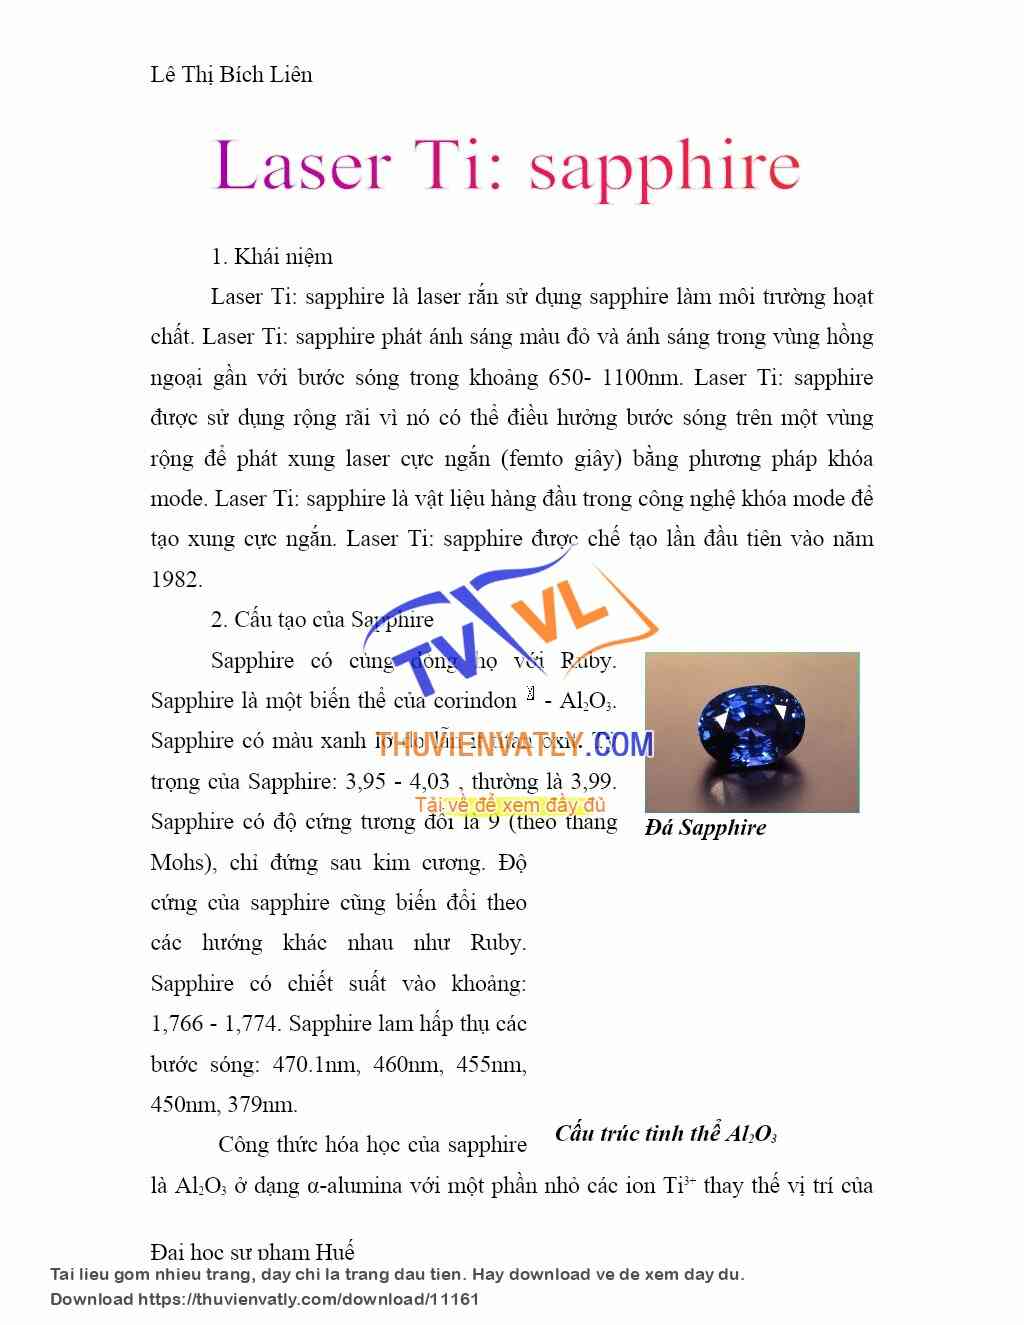 Laser Sapphire